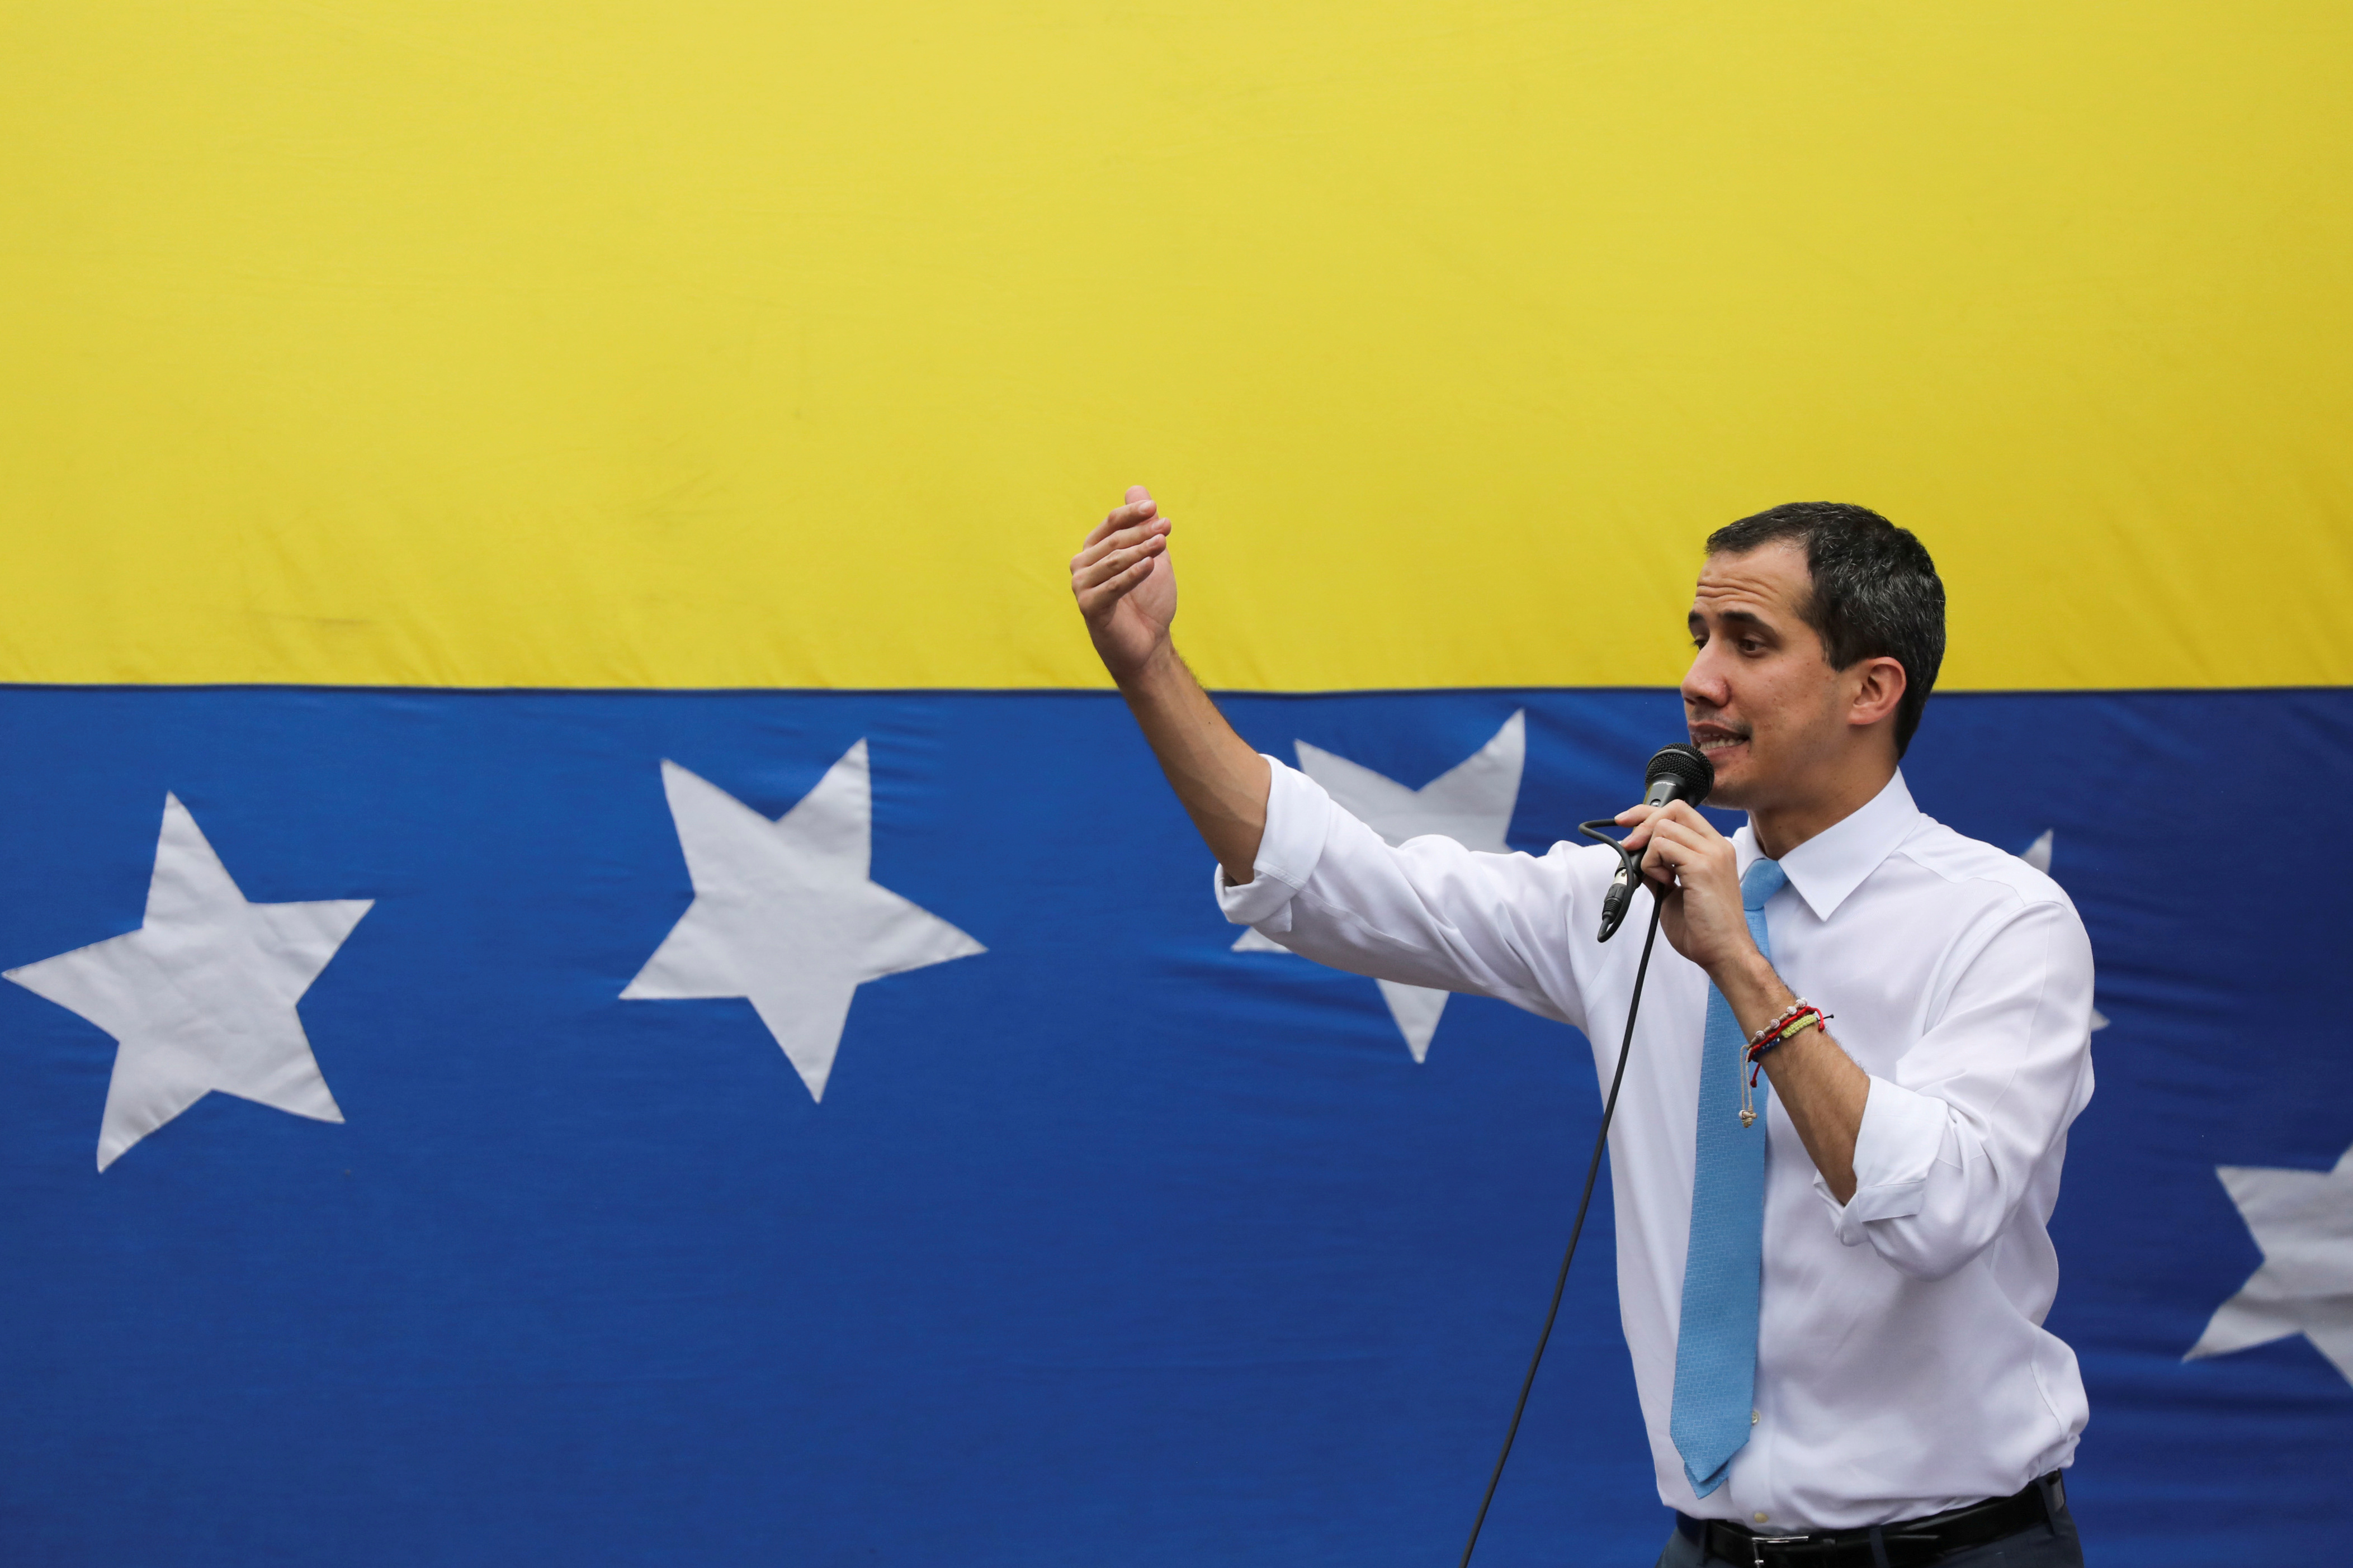 Presidente Guaidó resaltó la lucha de los padres venezolanos por recuperar la democracia